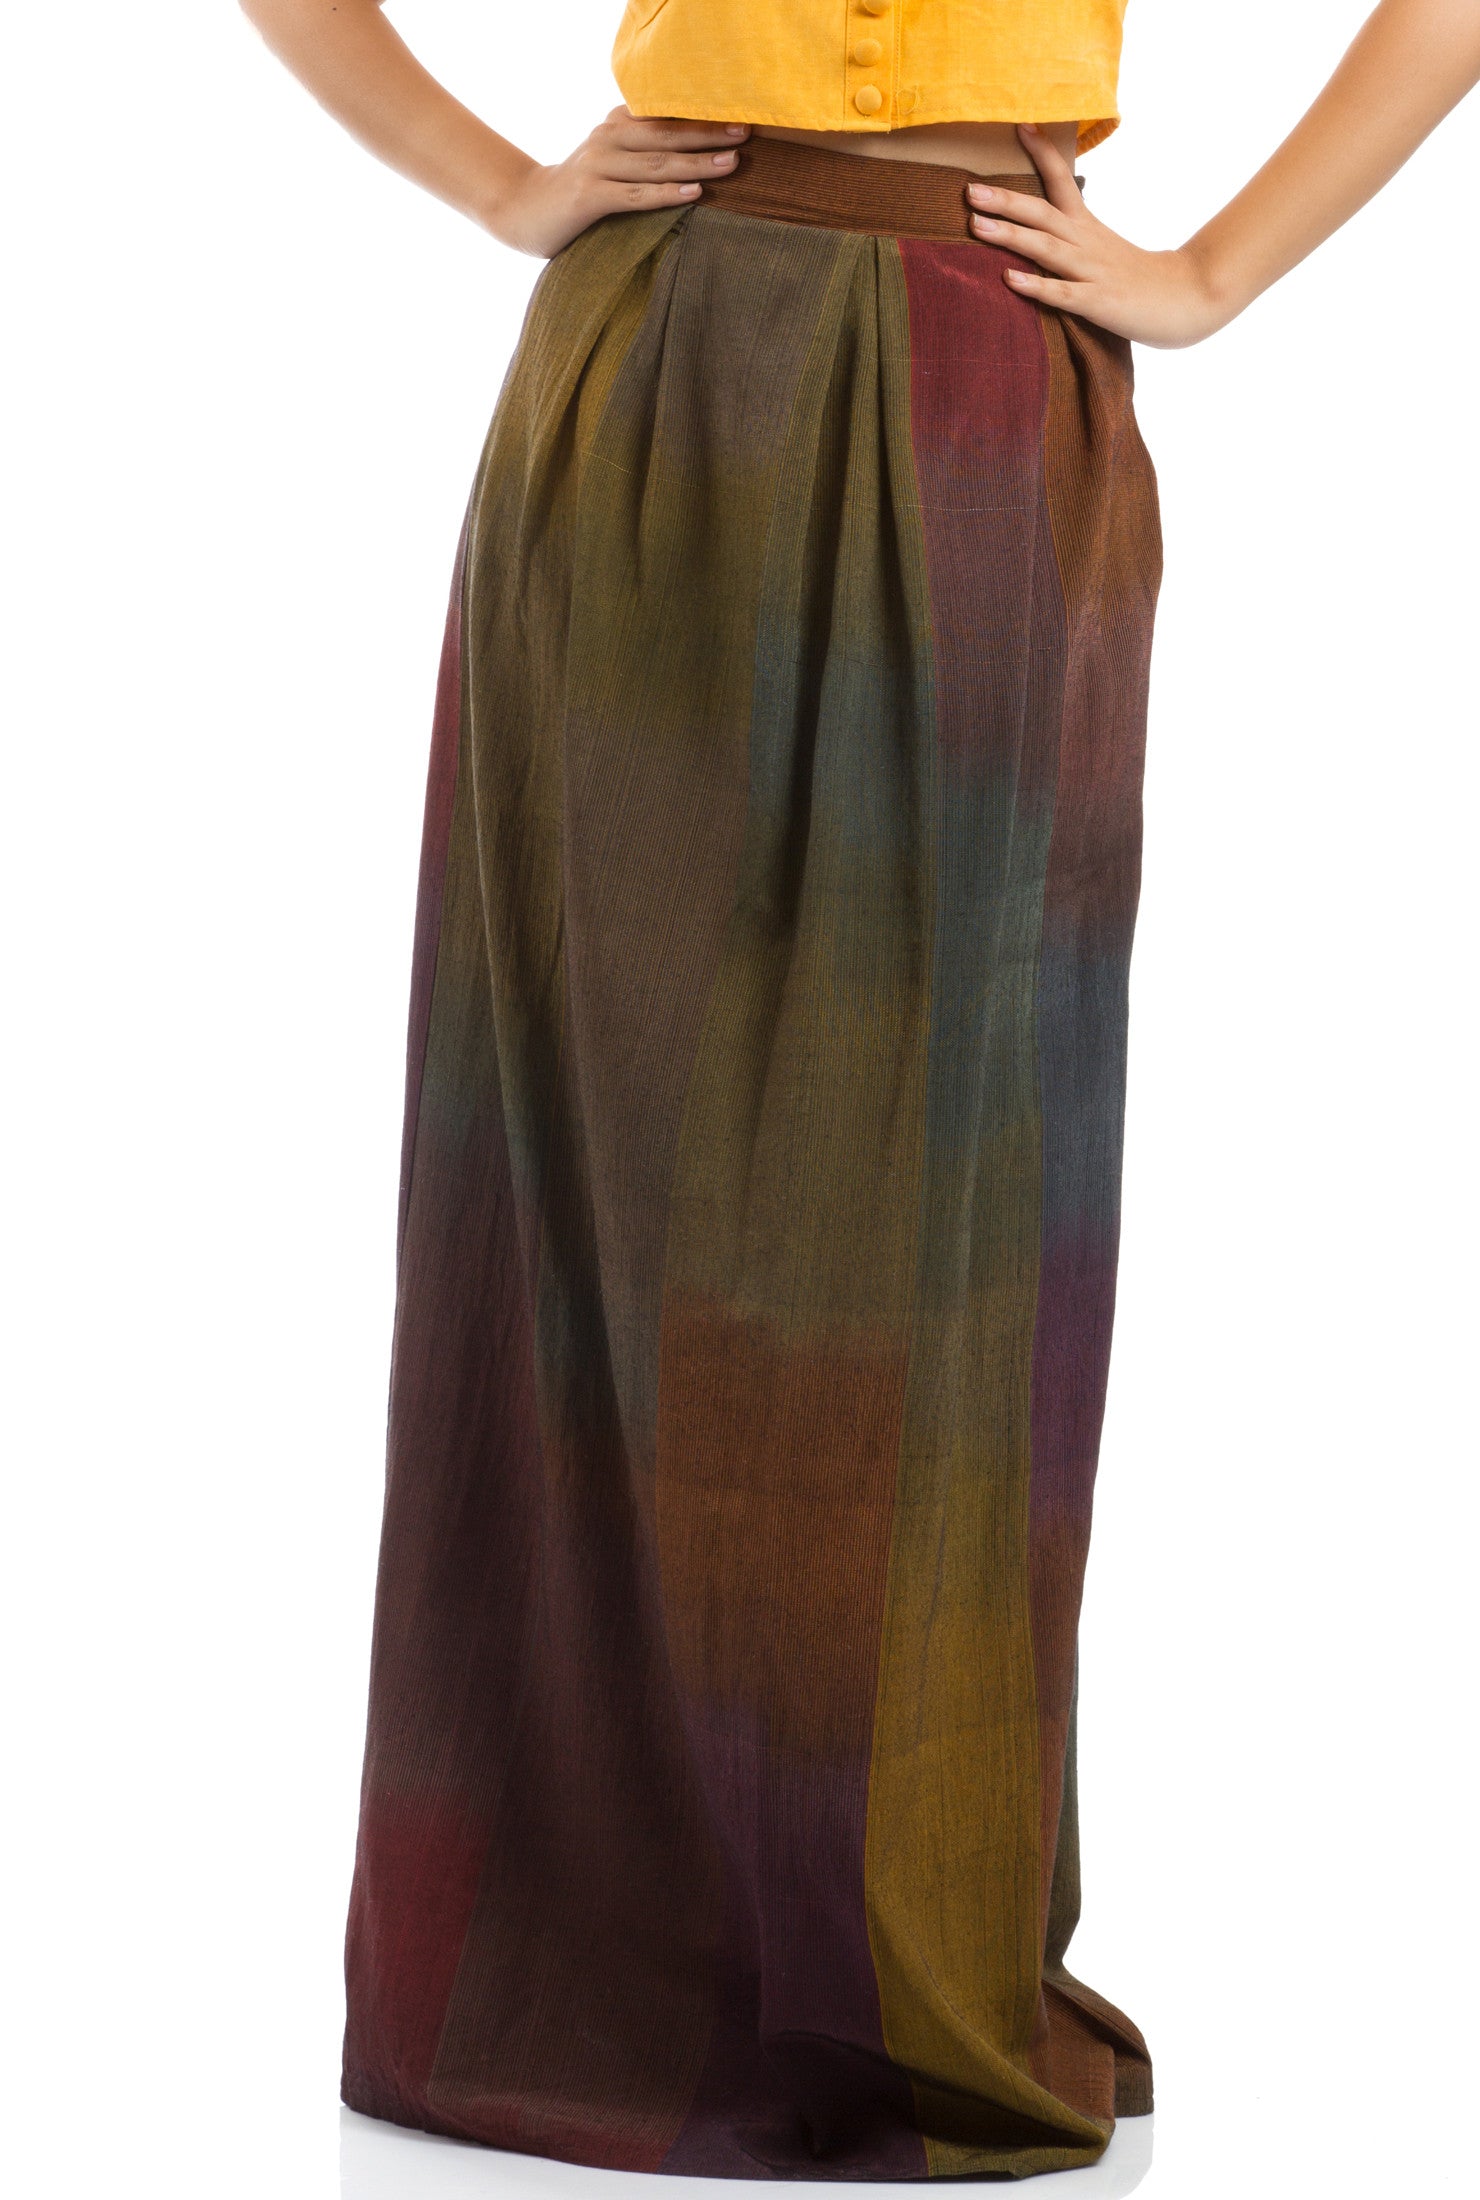 The Arabian Exotic Long Skirt